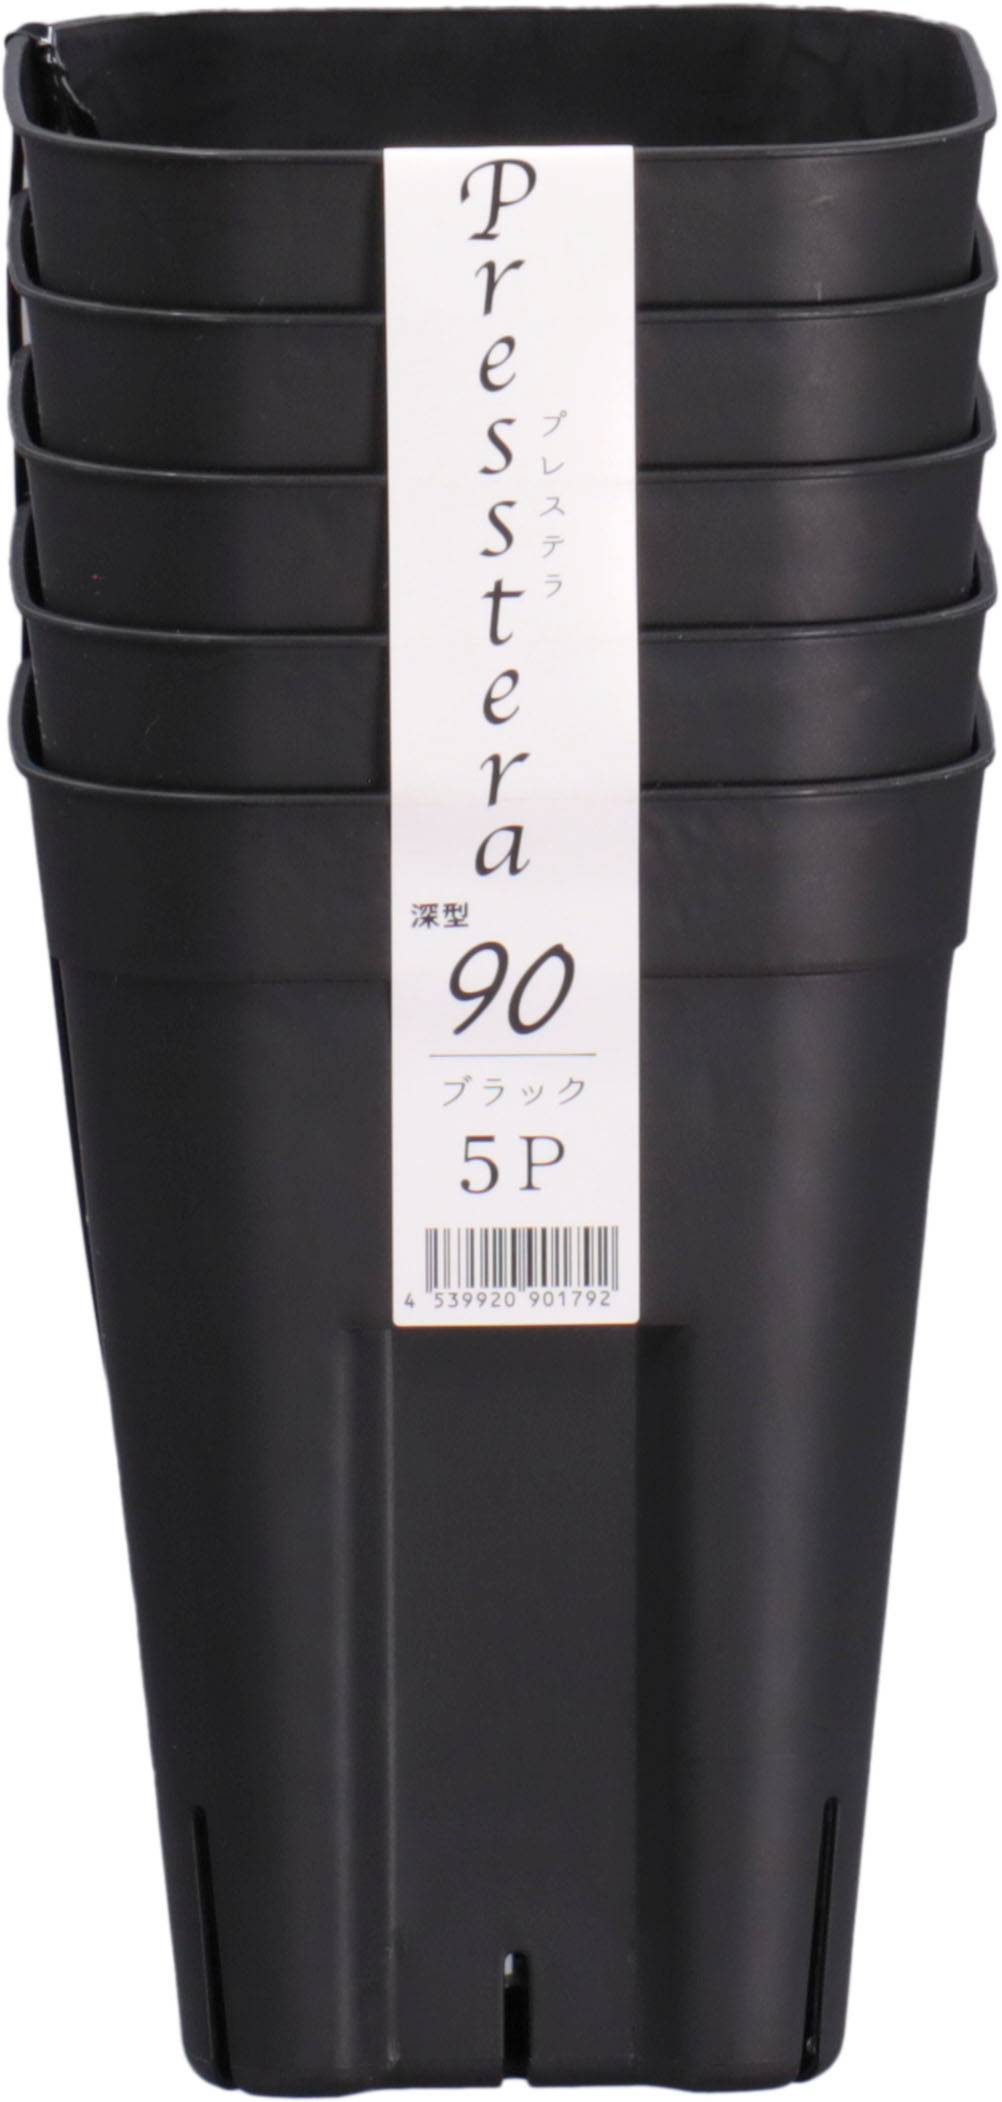 プレステラ 深型90 5個組 ブラック 日本ポリ鉢販売